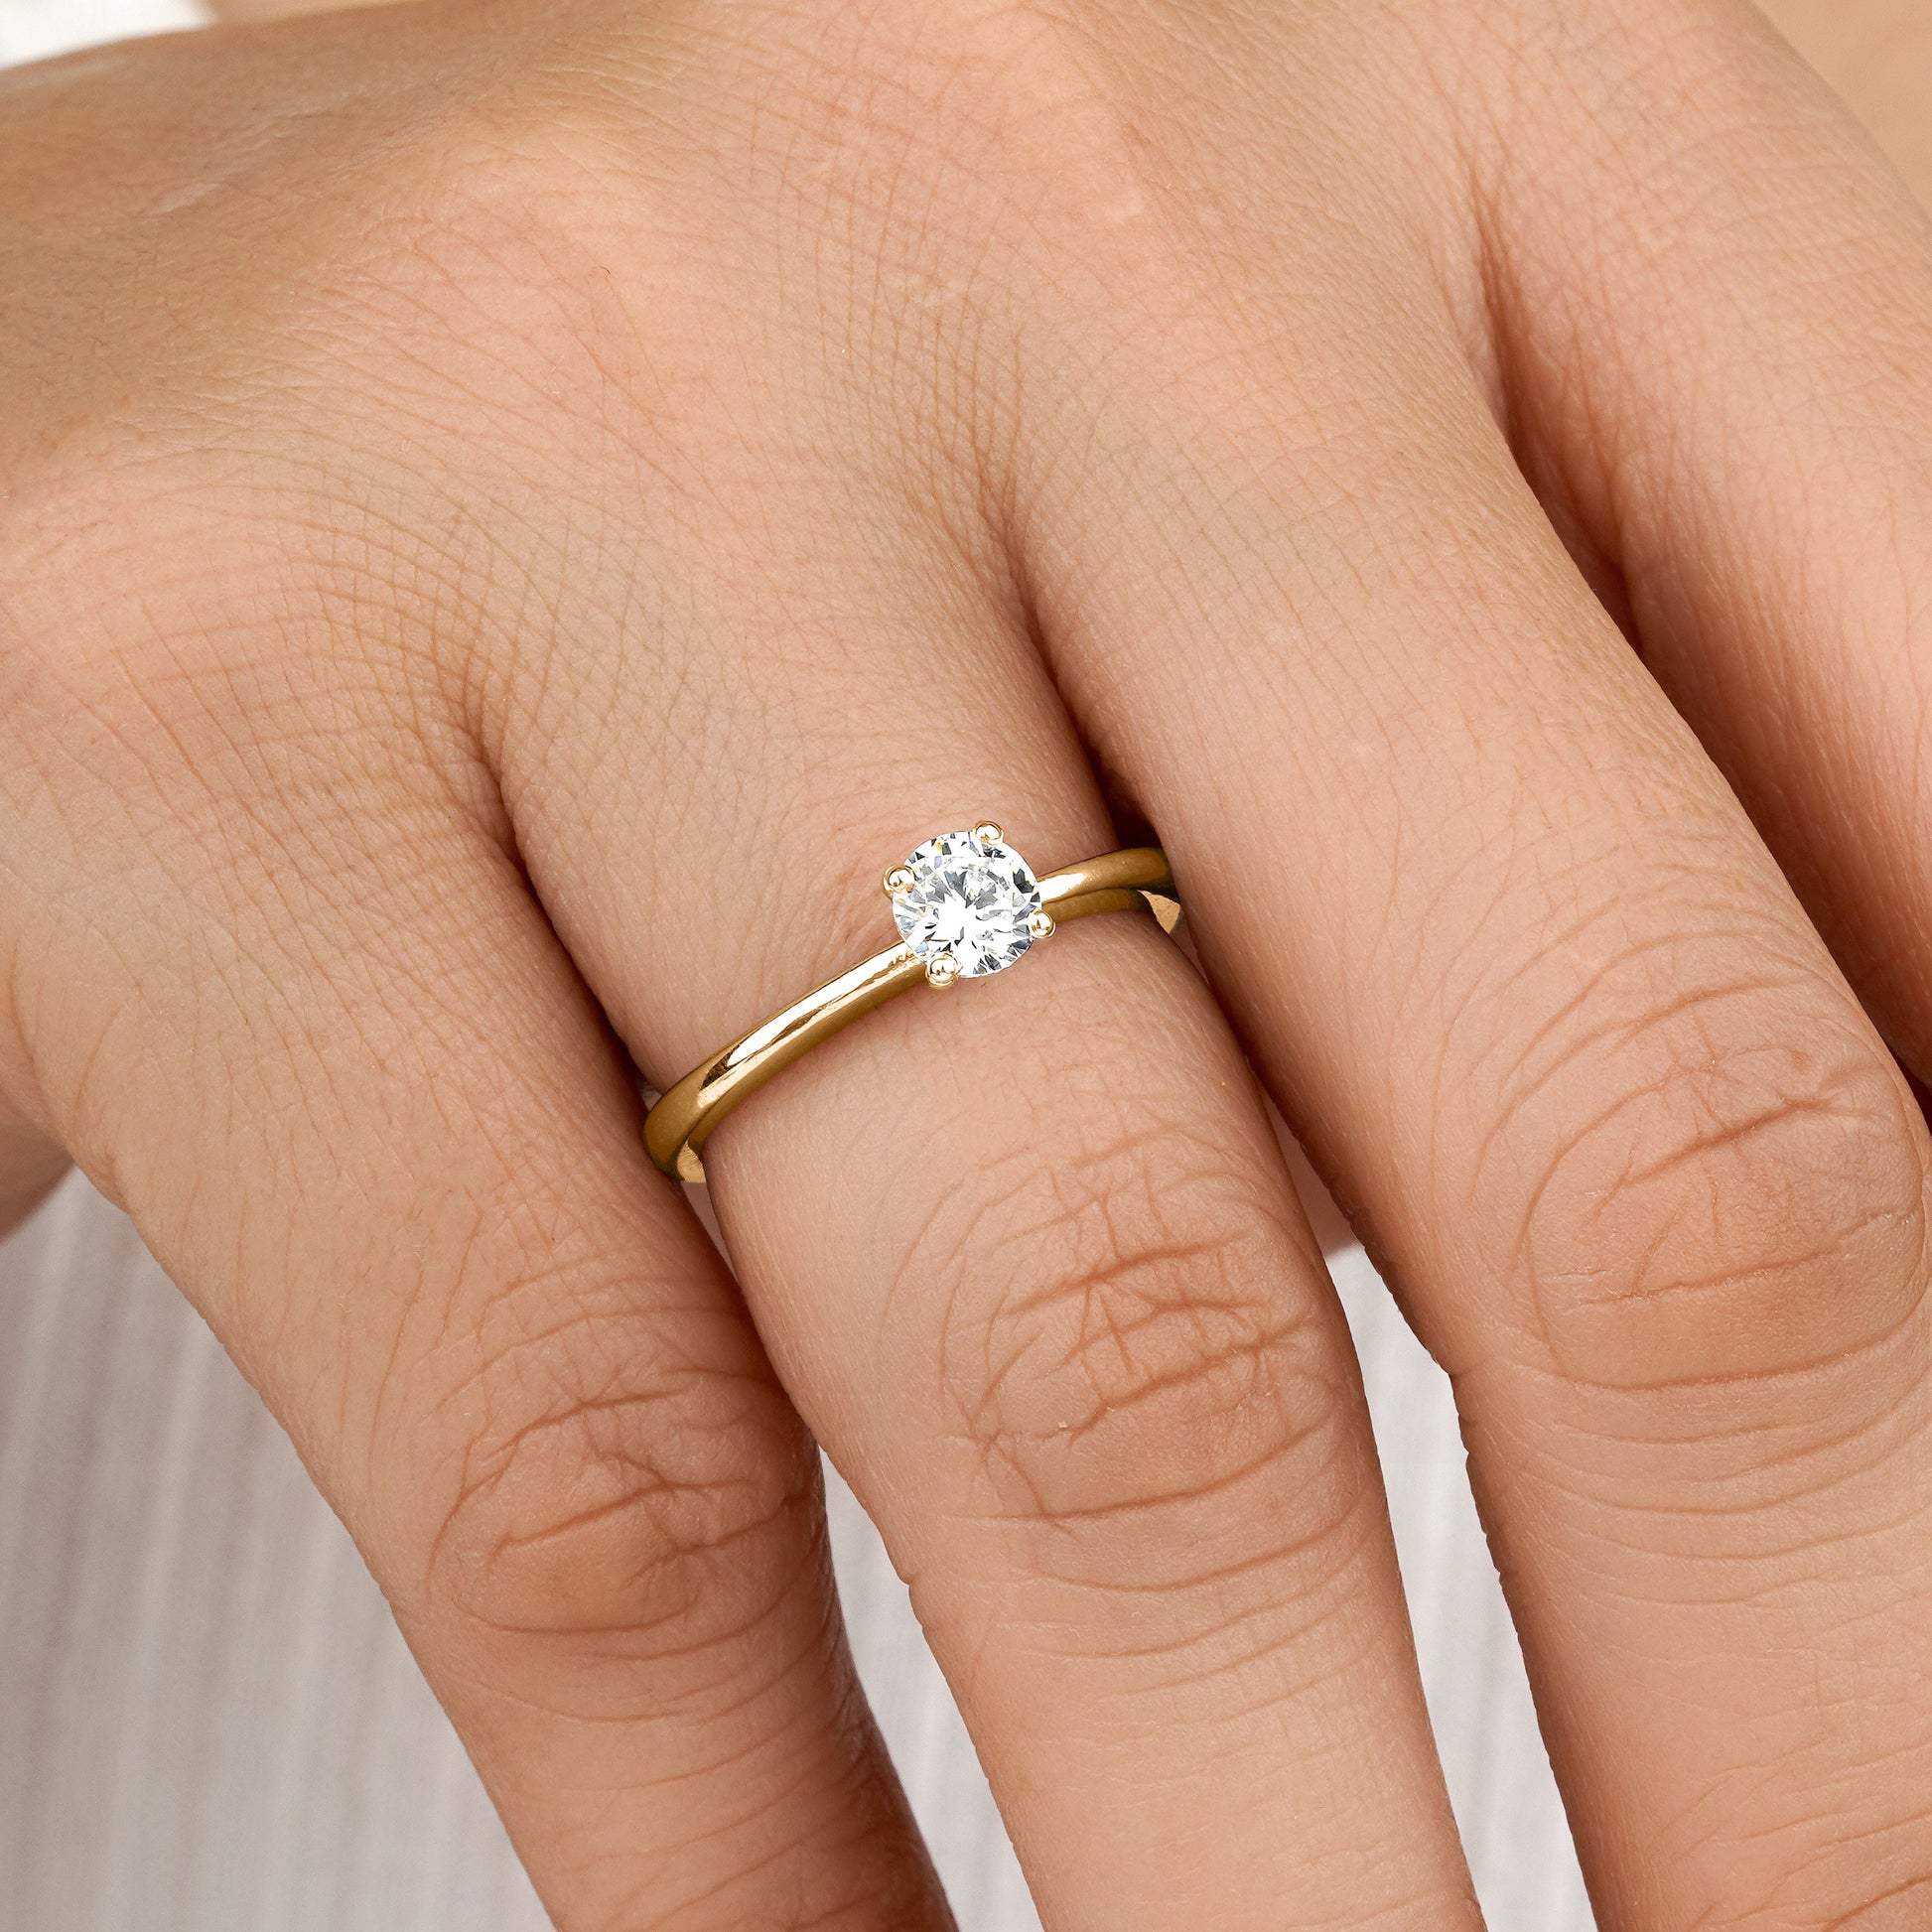 Moissanite engagement ring on model hand